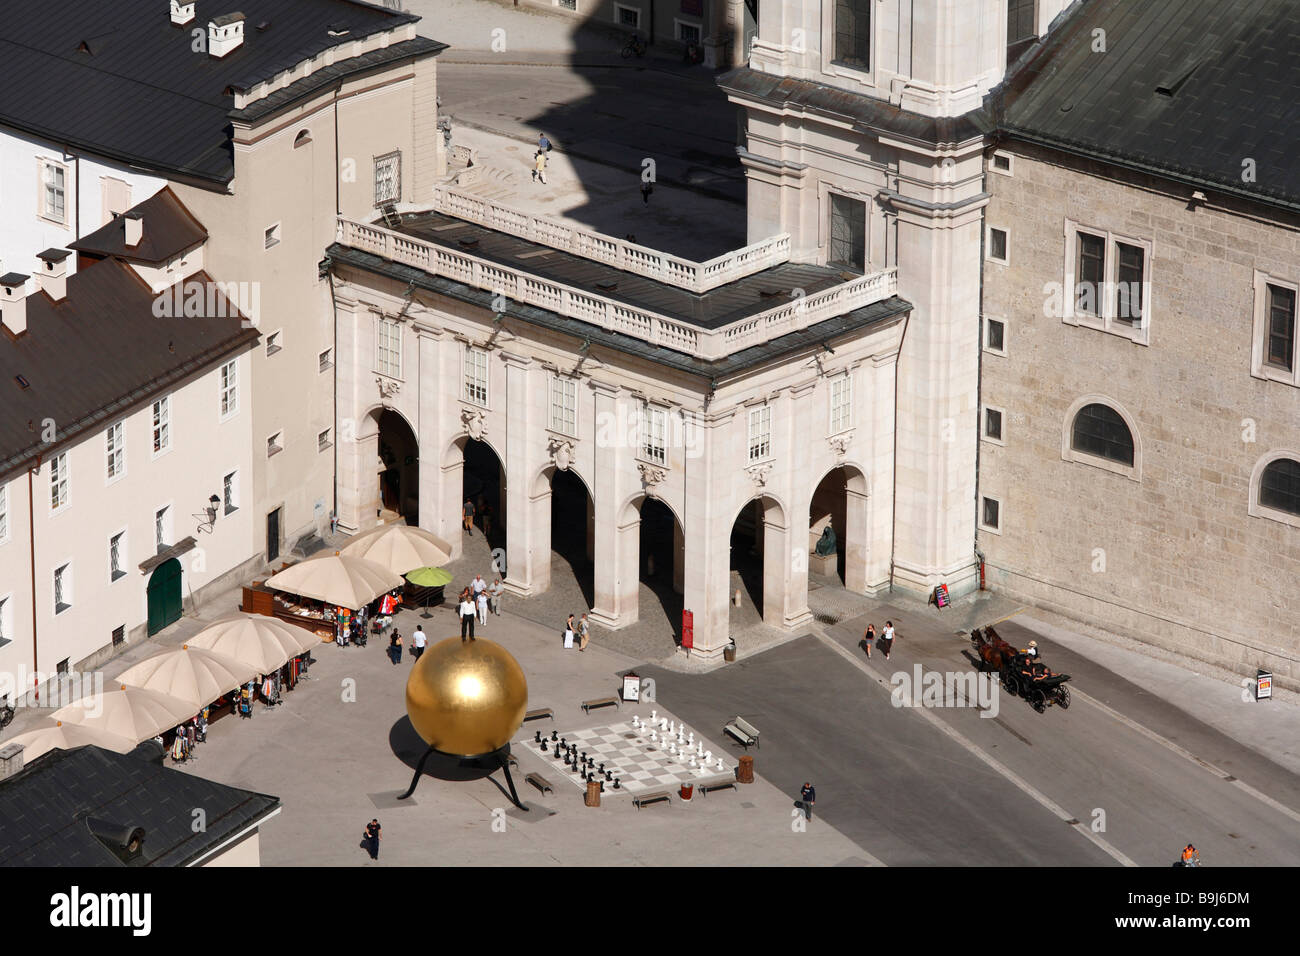 Kapitelplatz con el objeto de arte "phaera' de Stephan Balkenhol, Salzburgo, Austria, Europa Foto de stock